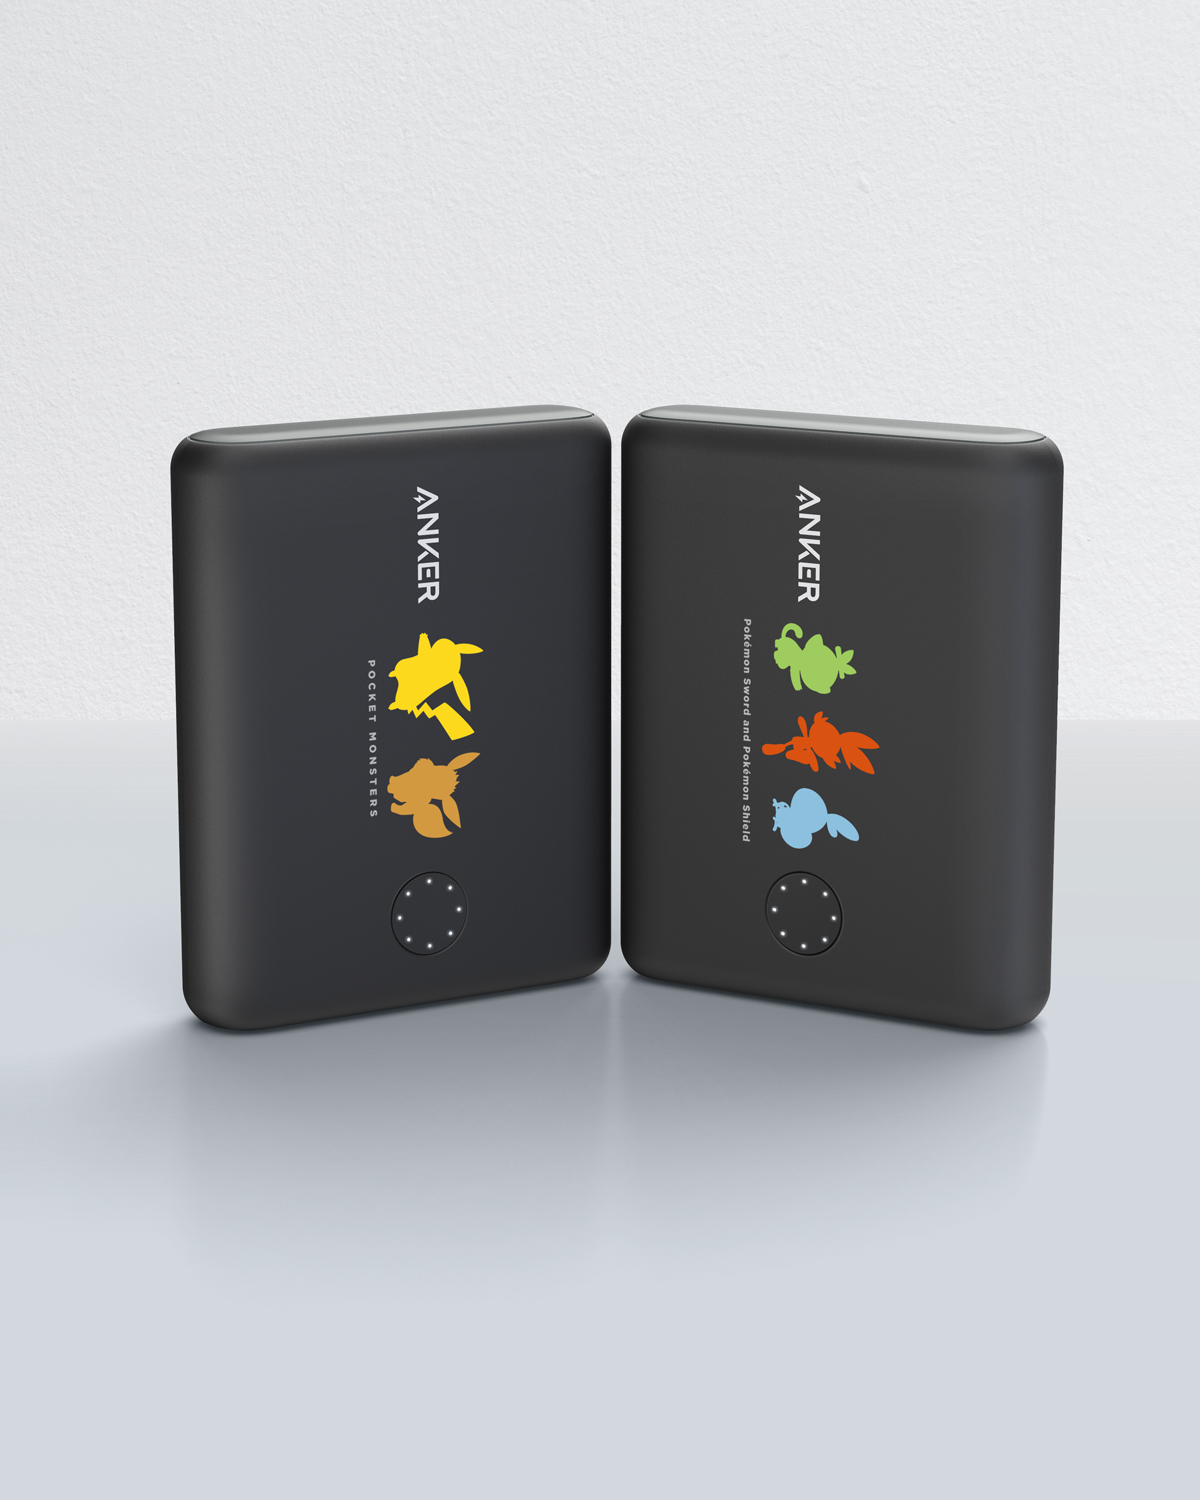 Ankerが任天堂公式ライセンスを取得したポケモンモバイルバッテリー 2モデルを発売 ニコニコニュース